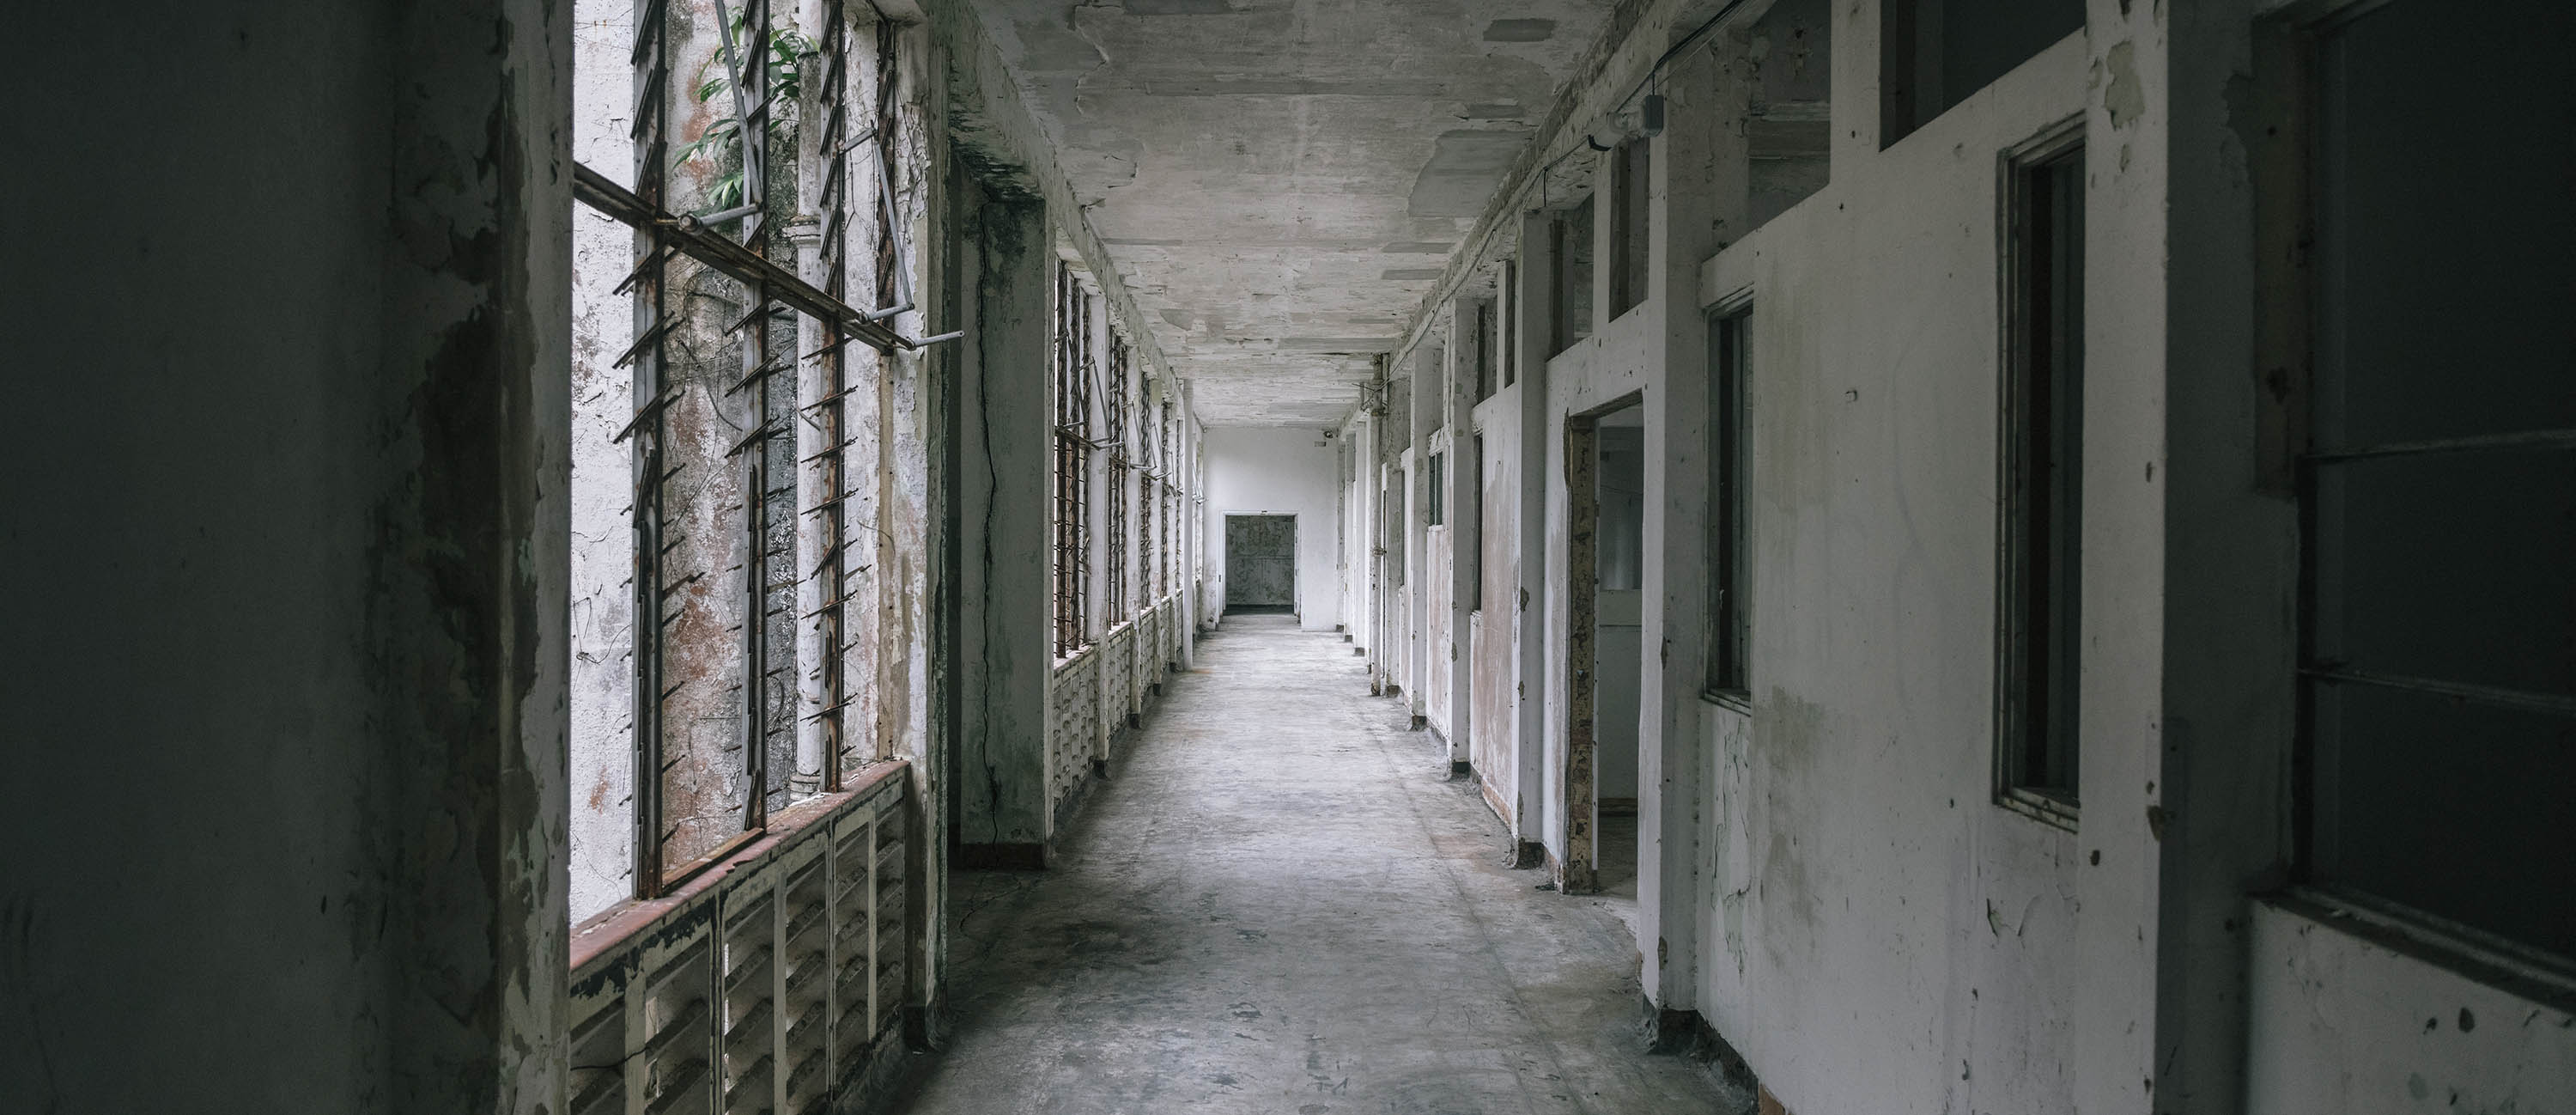 Abandoned Singapore: Old Changi Hospital